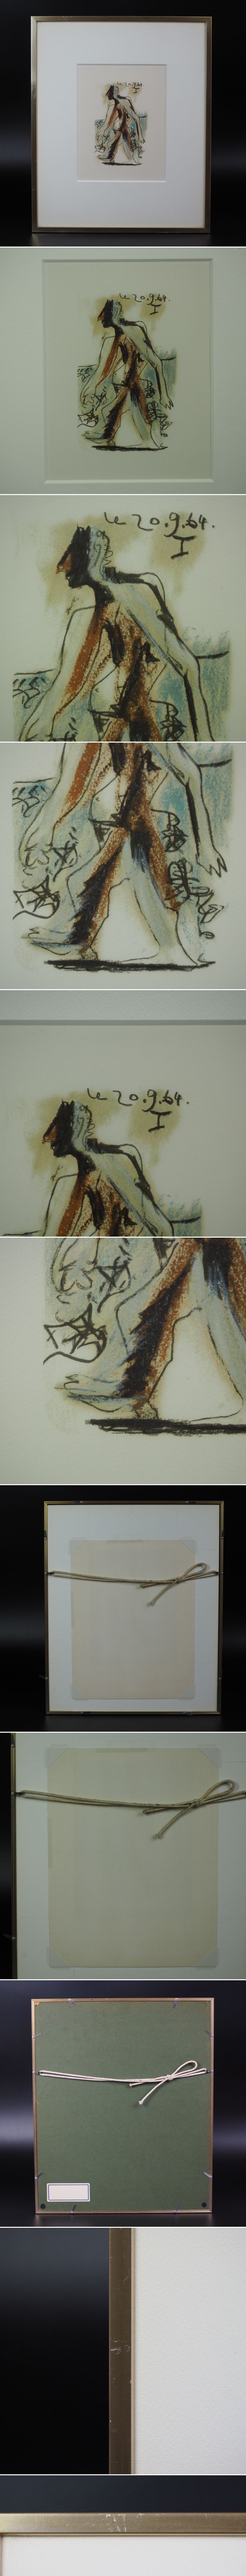 割引値下げ中 ピカソ版画　1964年作品 画寸17×10.5ｃｍ 石版画、リトグラフ